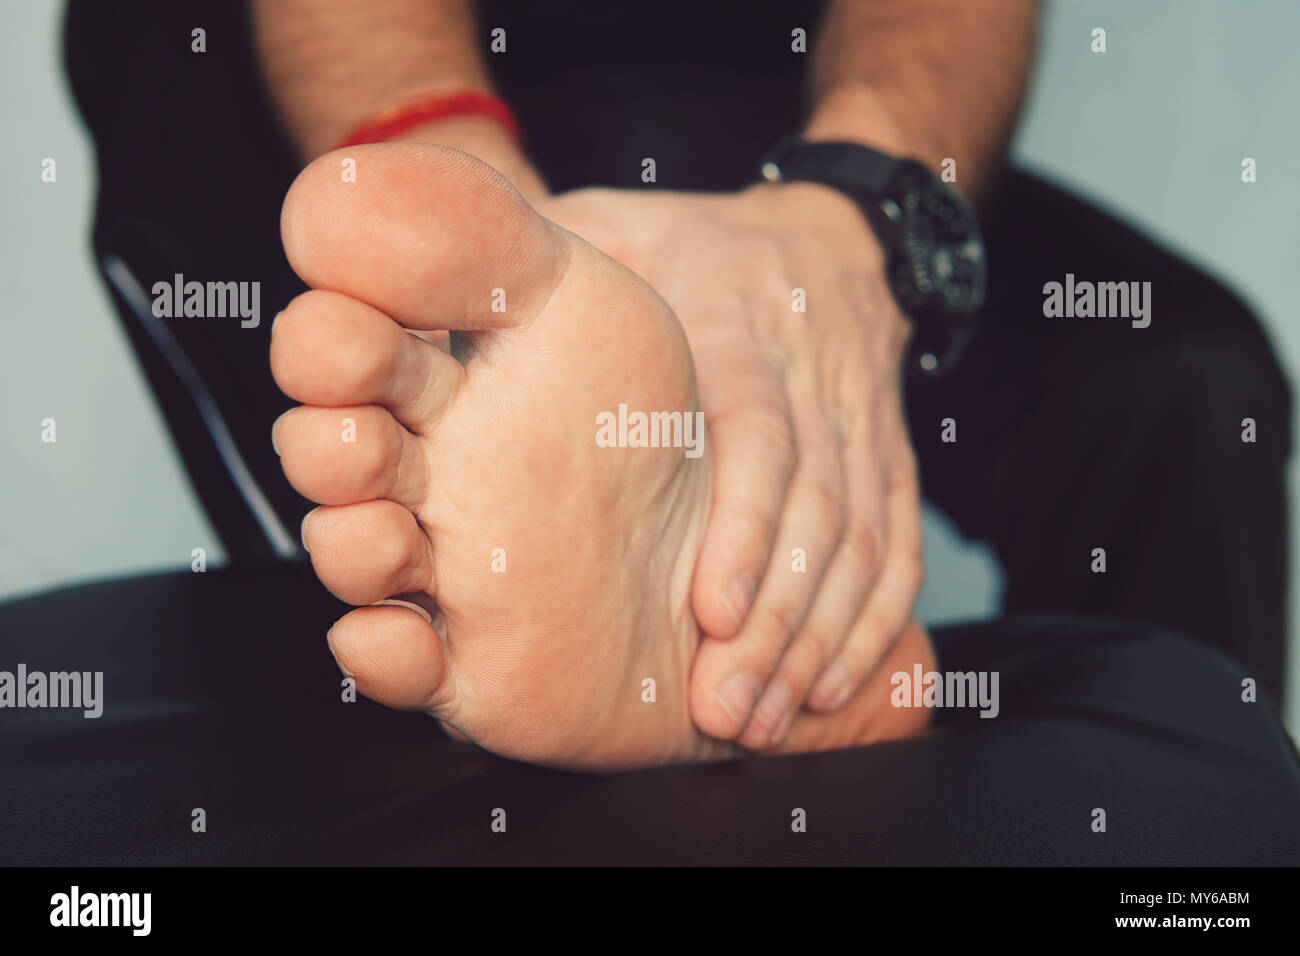 La main de l'homme massée un pied. Avec l'homme et l'inflammation douloureuse la goutte sur son pied autour du gros orteil. Banque D'Images